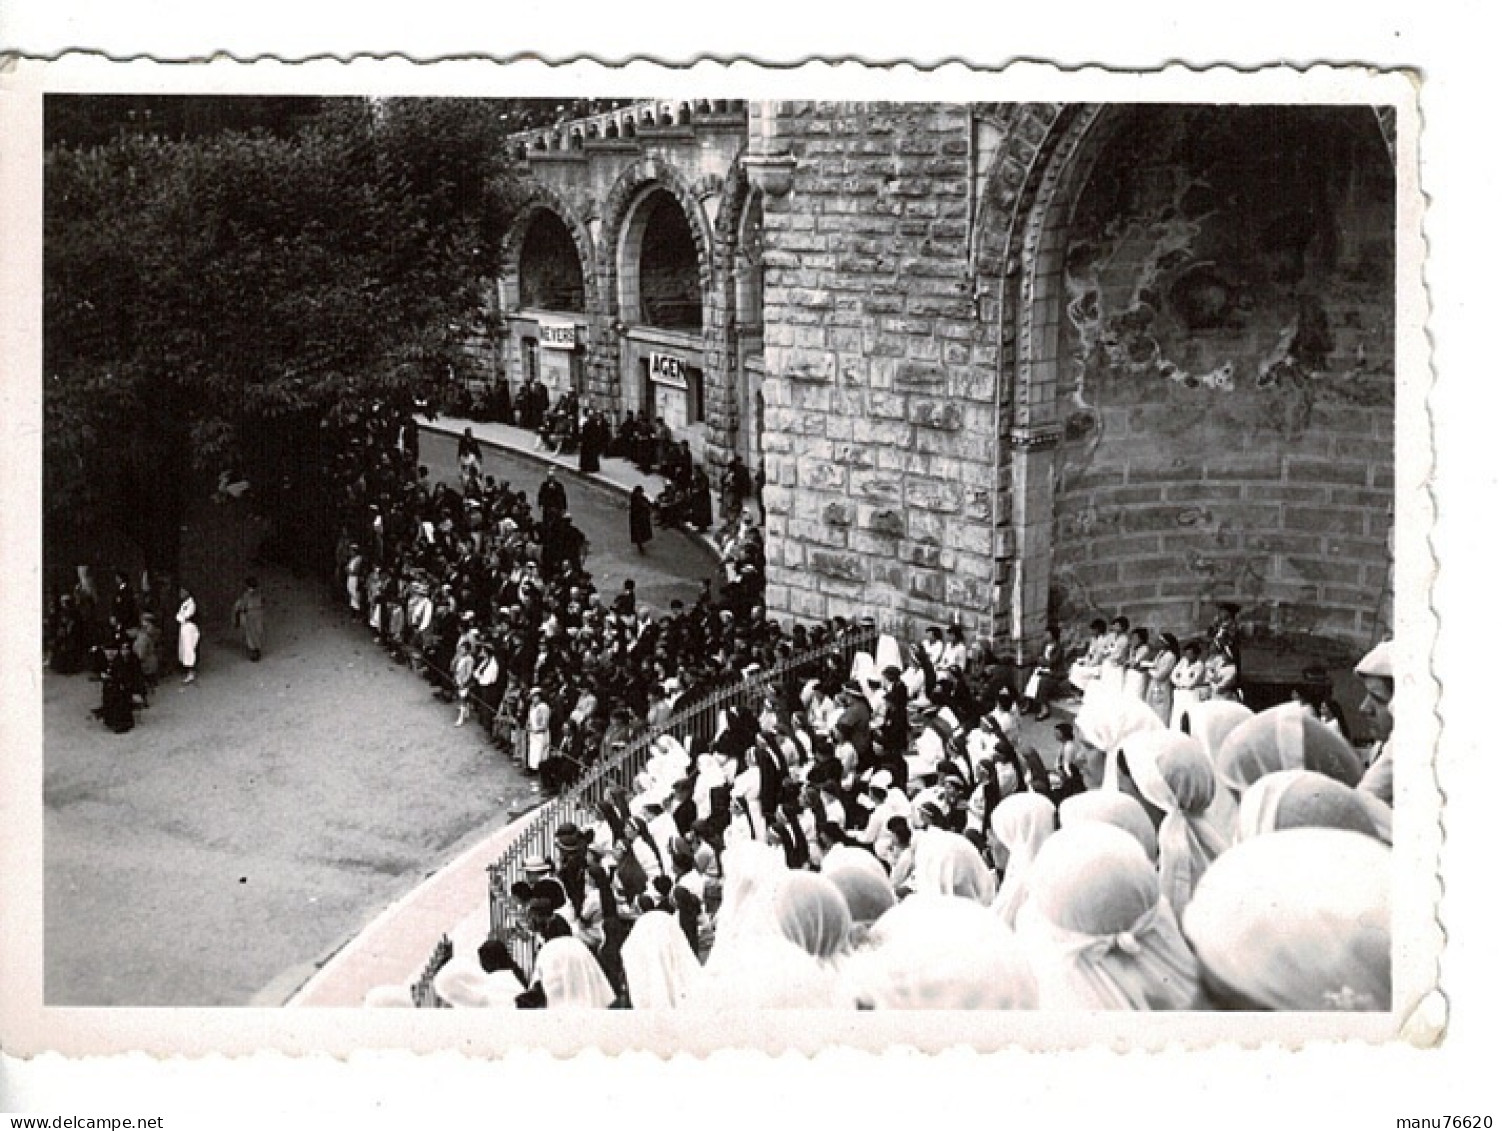 Ref 1 - Photo : Les Bernadette à Lourdes 1935? - France . - Europe